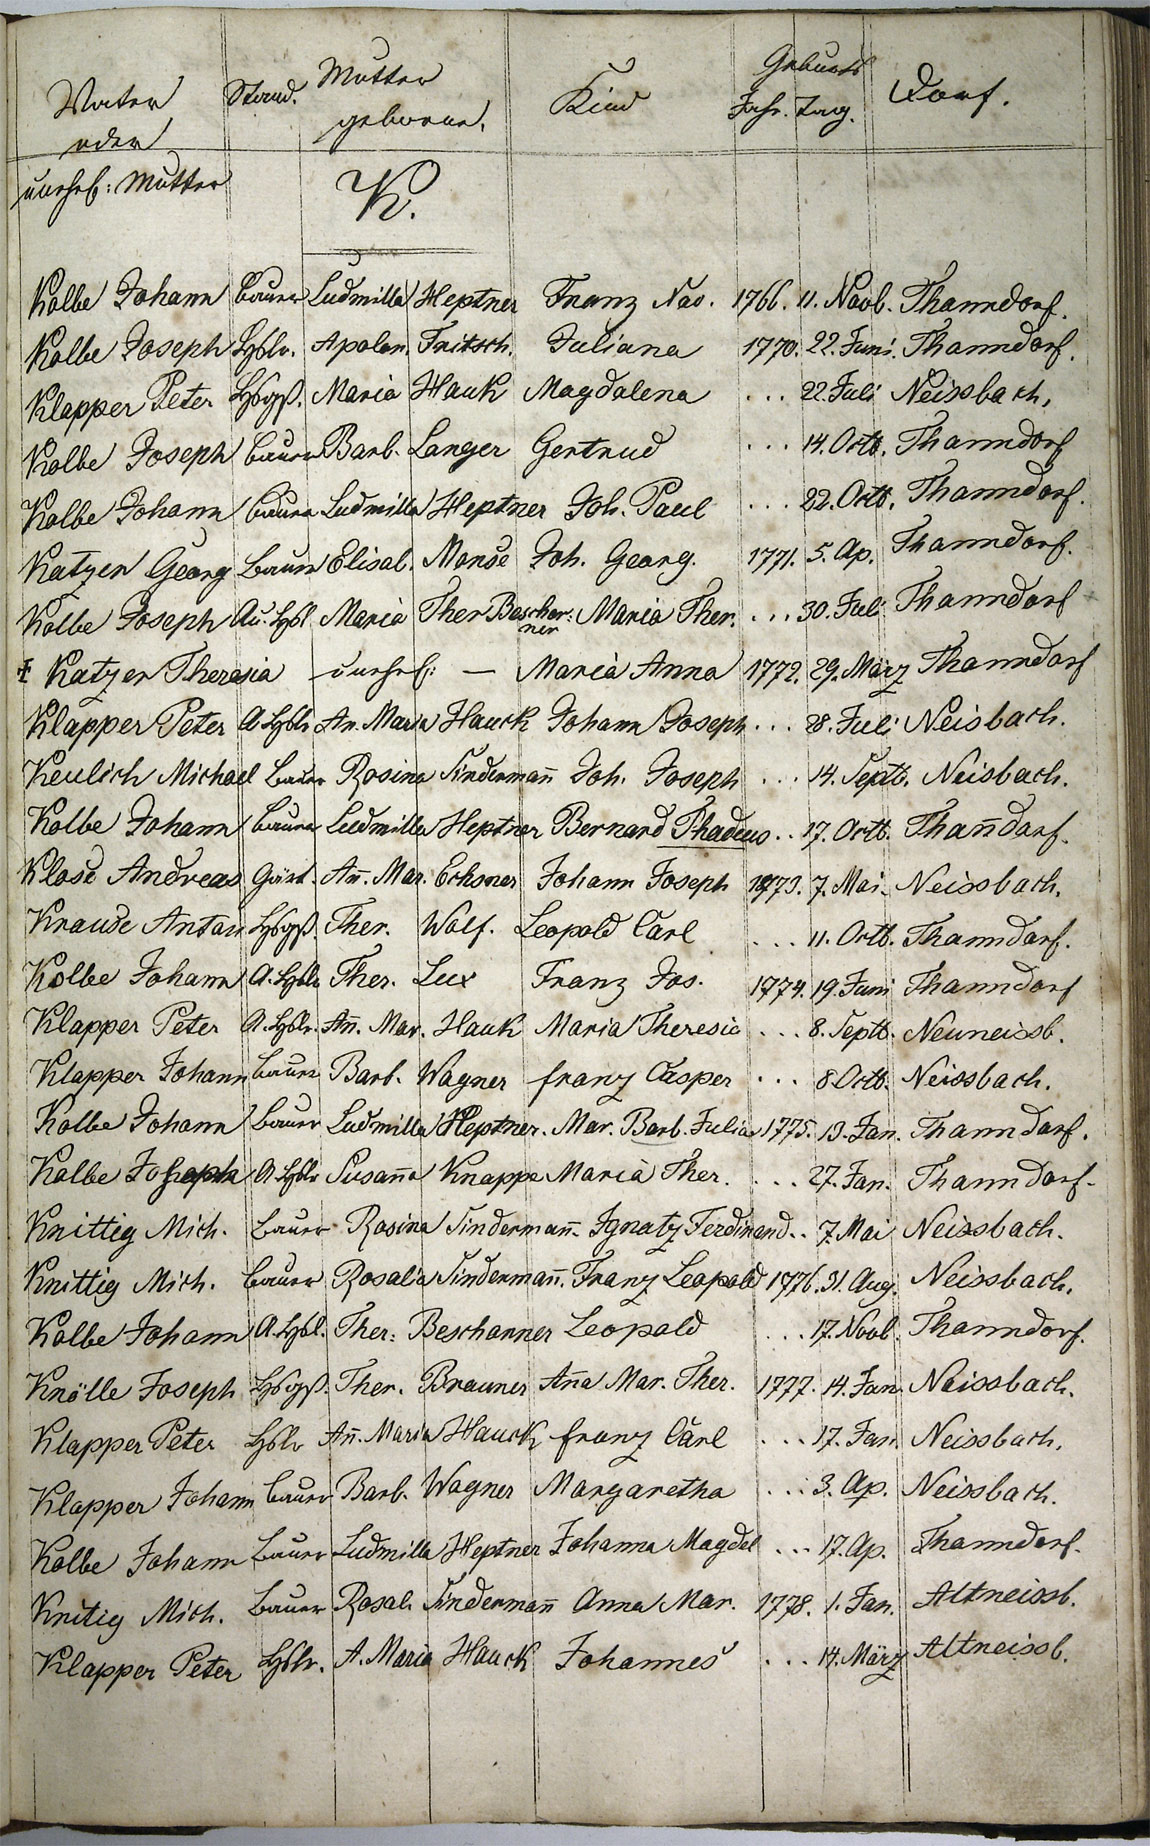 Taufregister 1770 - 1889 Seite 73